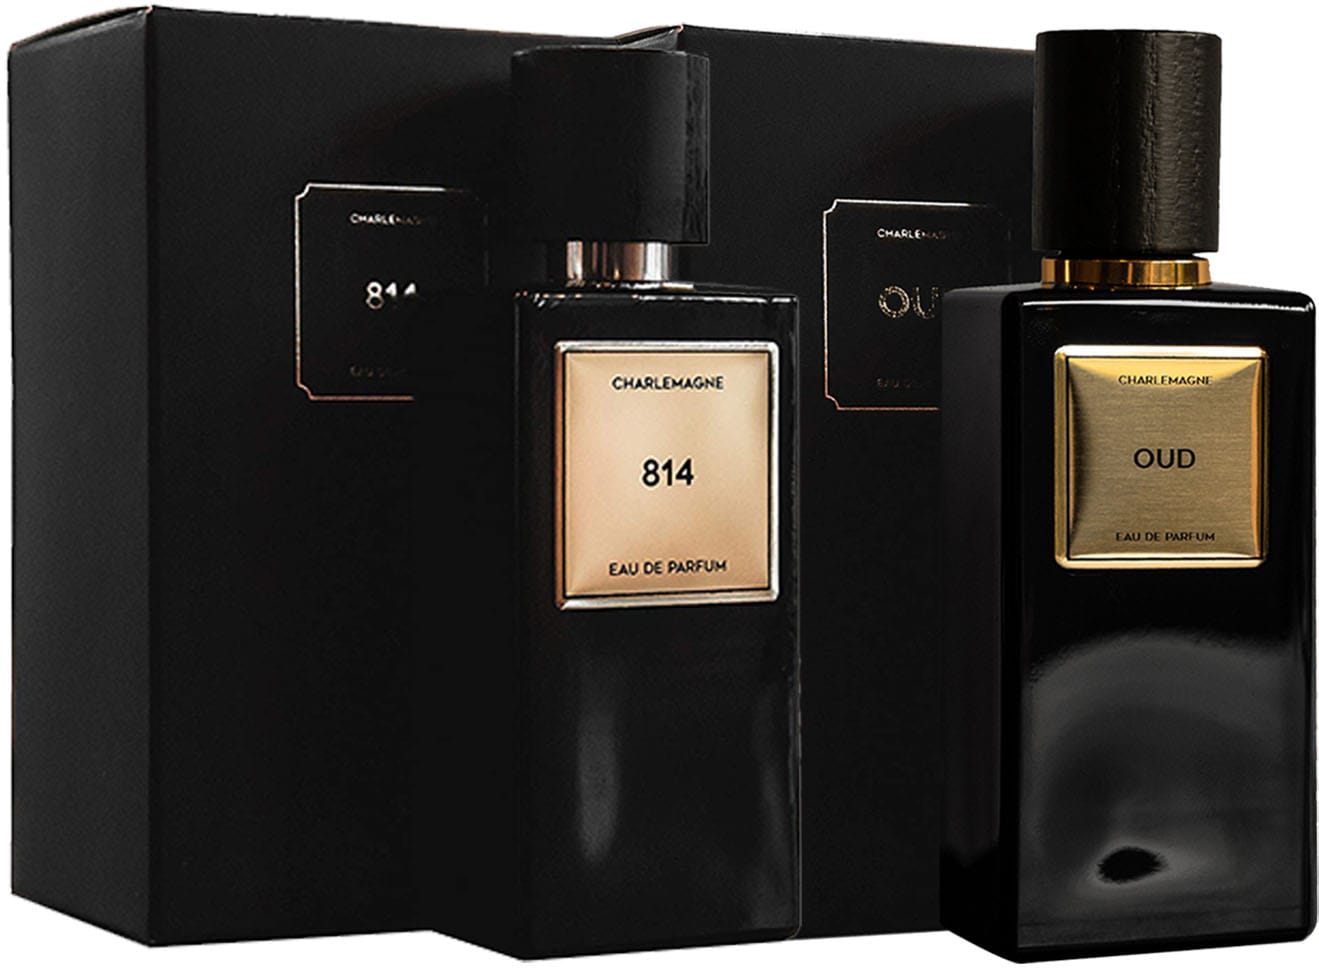 Oud«, OTTO Duft-Set bei CHARLEMAGNE Set »Eau de Parfum online bestellen & (2 tlg.) 814